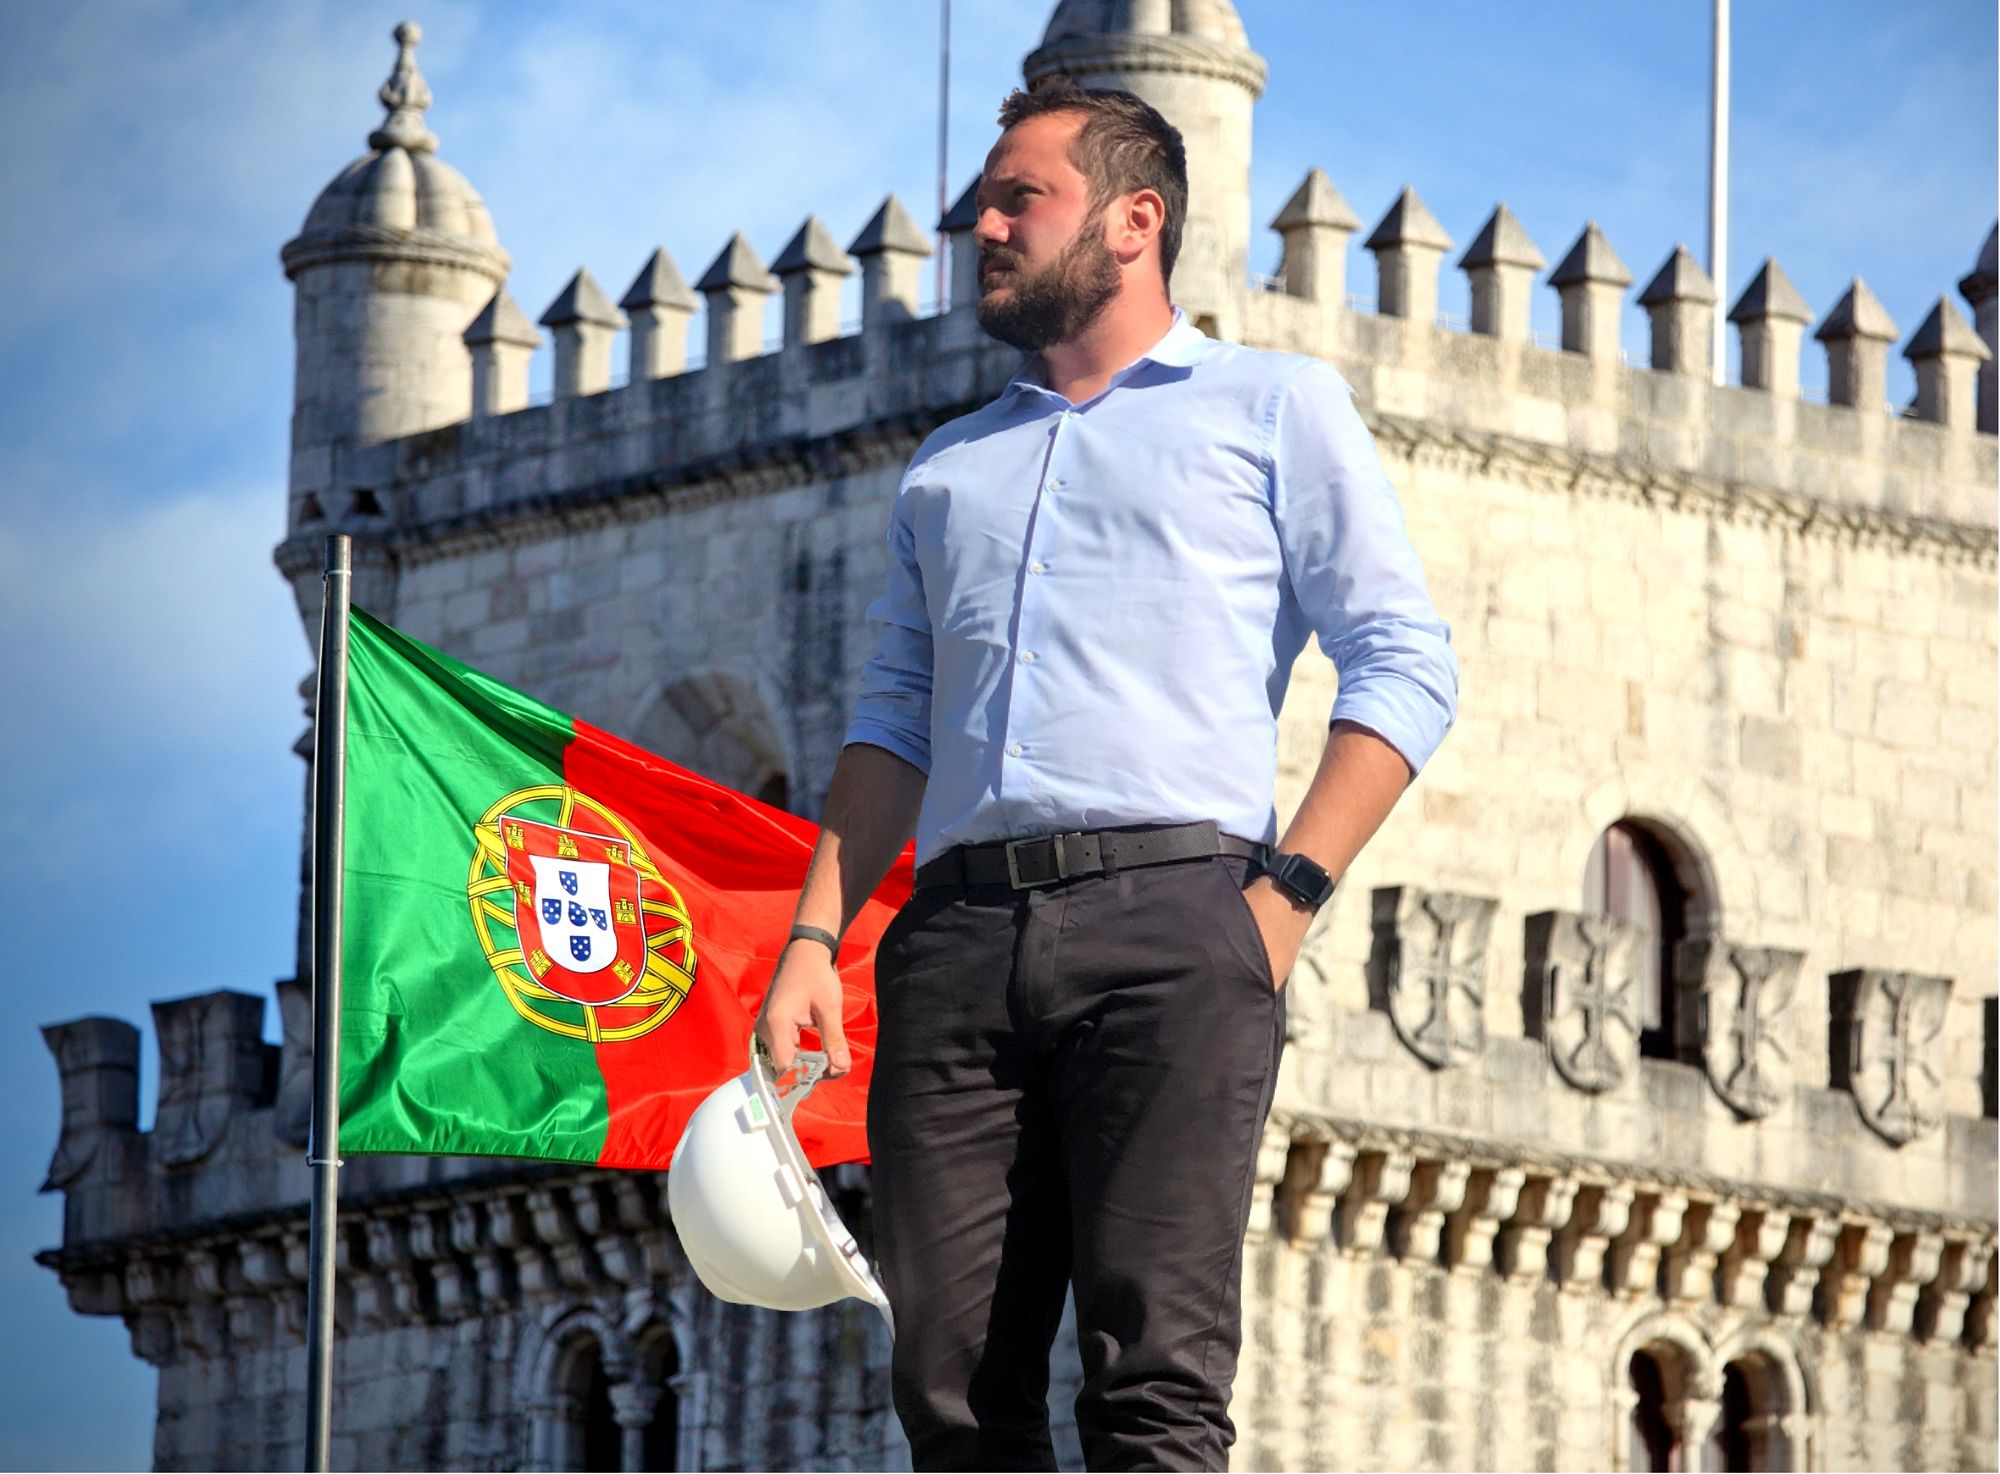 validar o diploma de engenharia em Portugal